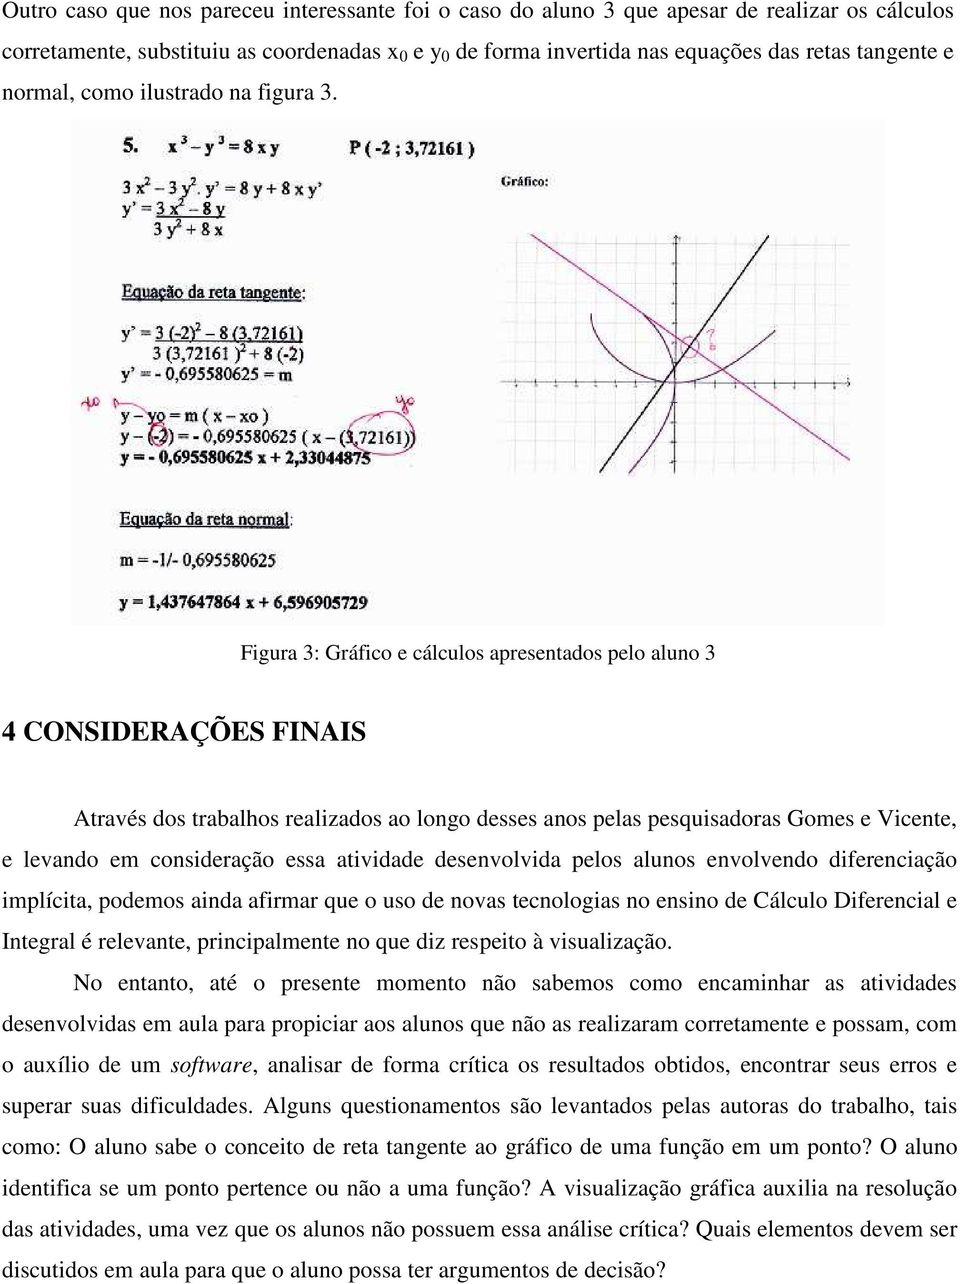 Figura 3: Gráfico e cálculos apresentados pelo aluno 3 4 CONSIDERAÇÕES FINAIS Através dos trabalhos realizados ao longo desses anos pelas pesquisadoras Gomes e Vicente, e levando em consideração essa